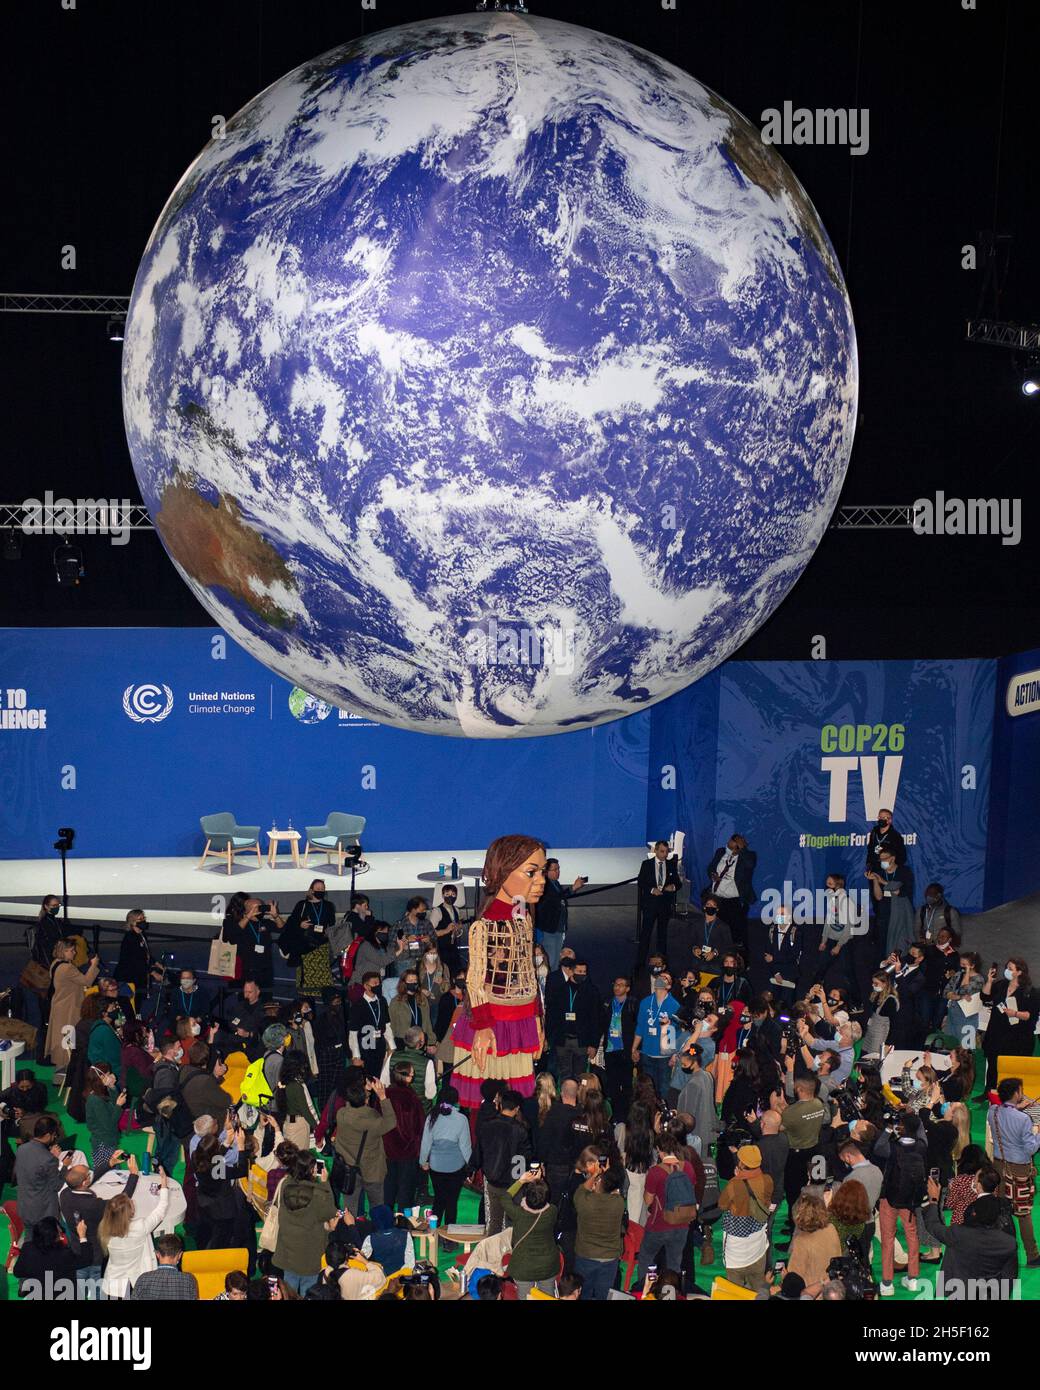 Glasgow, Écosse, Royaume-Uni.9 novembre 2021.PHOTO : la marionnette géante « Little Amal » occupe le devant de la scène dans l'arène OVO à la conférence COP26 sur les changements climatiques avec une bannière en dessous dévoilant les mots « 1.8 MILLIONS DE PERSONNES DISENT: CSAVE OUT FUTURE NOW » Credit: Colin Fisher/Alay Live News Banque D'Images